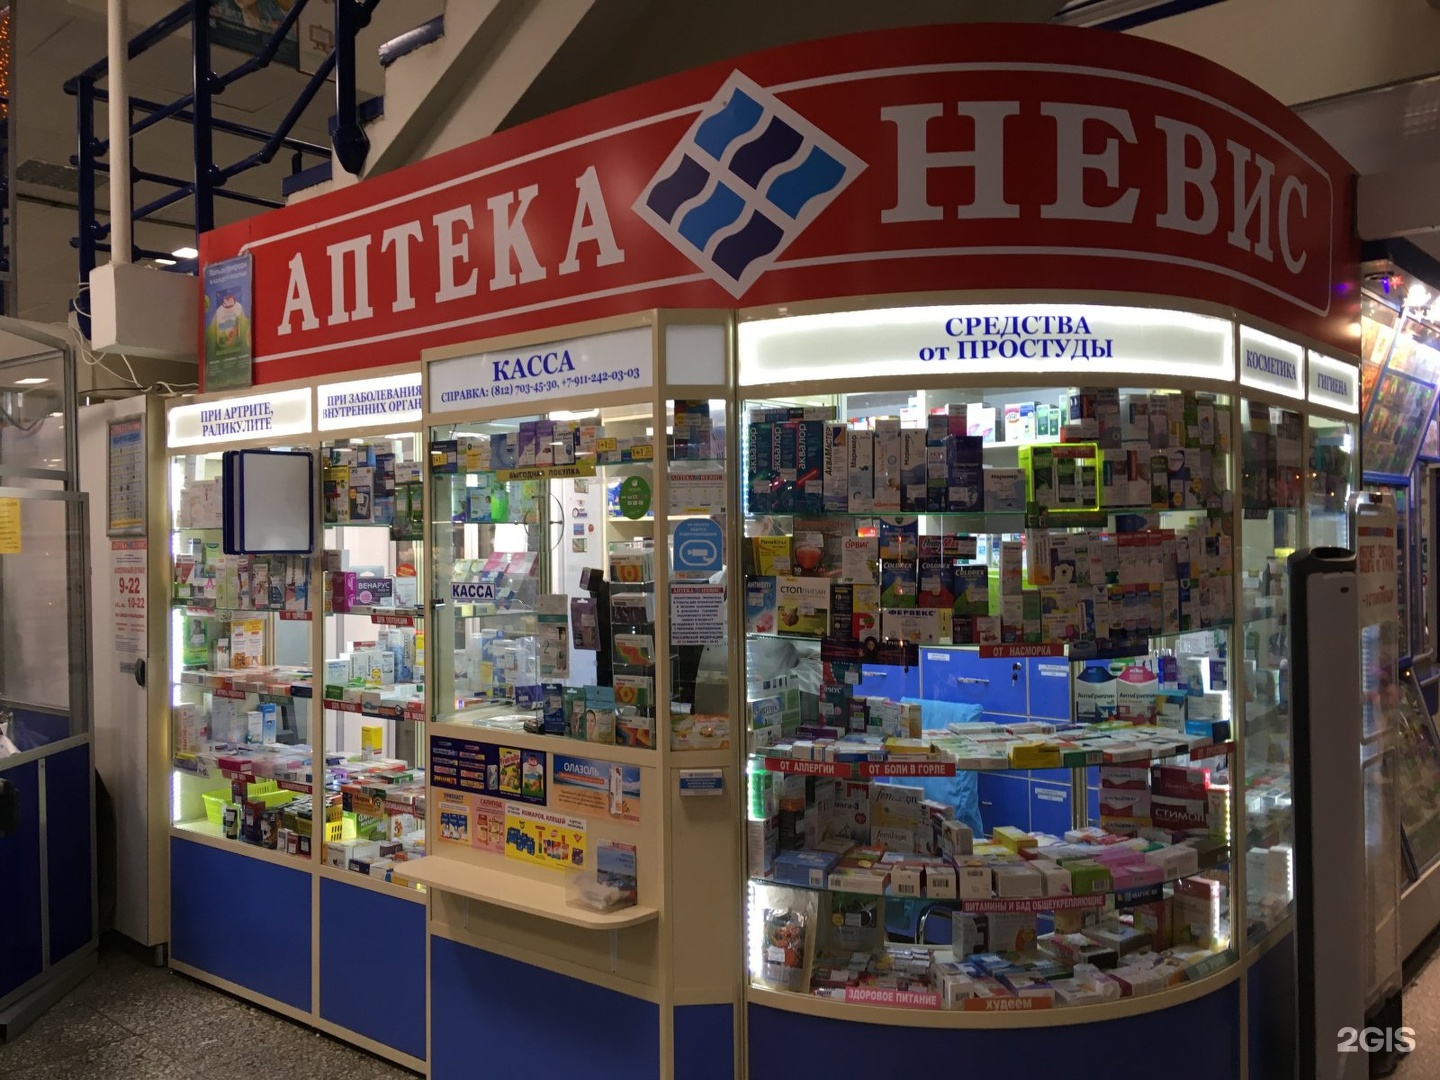 Аптека Невис Петрозаводск